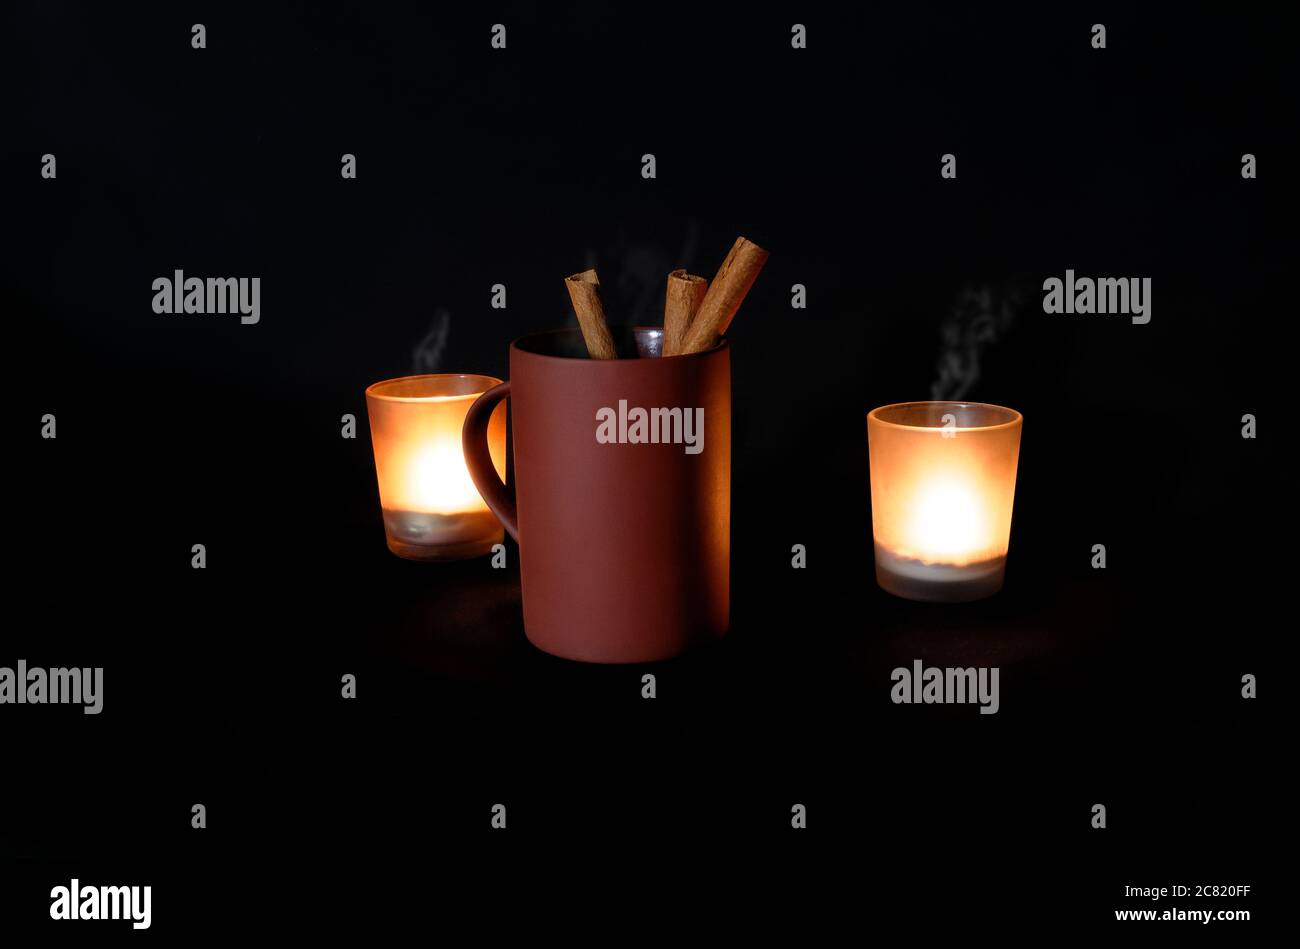 Tazza di caffè con bastoncini alla cannella in condizioni di scarsa illuminazione con vapore proveniente dalla tazza Foto Stock